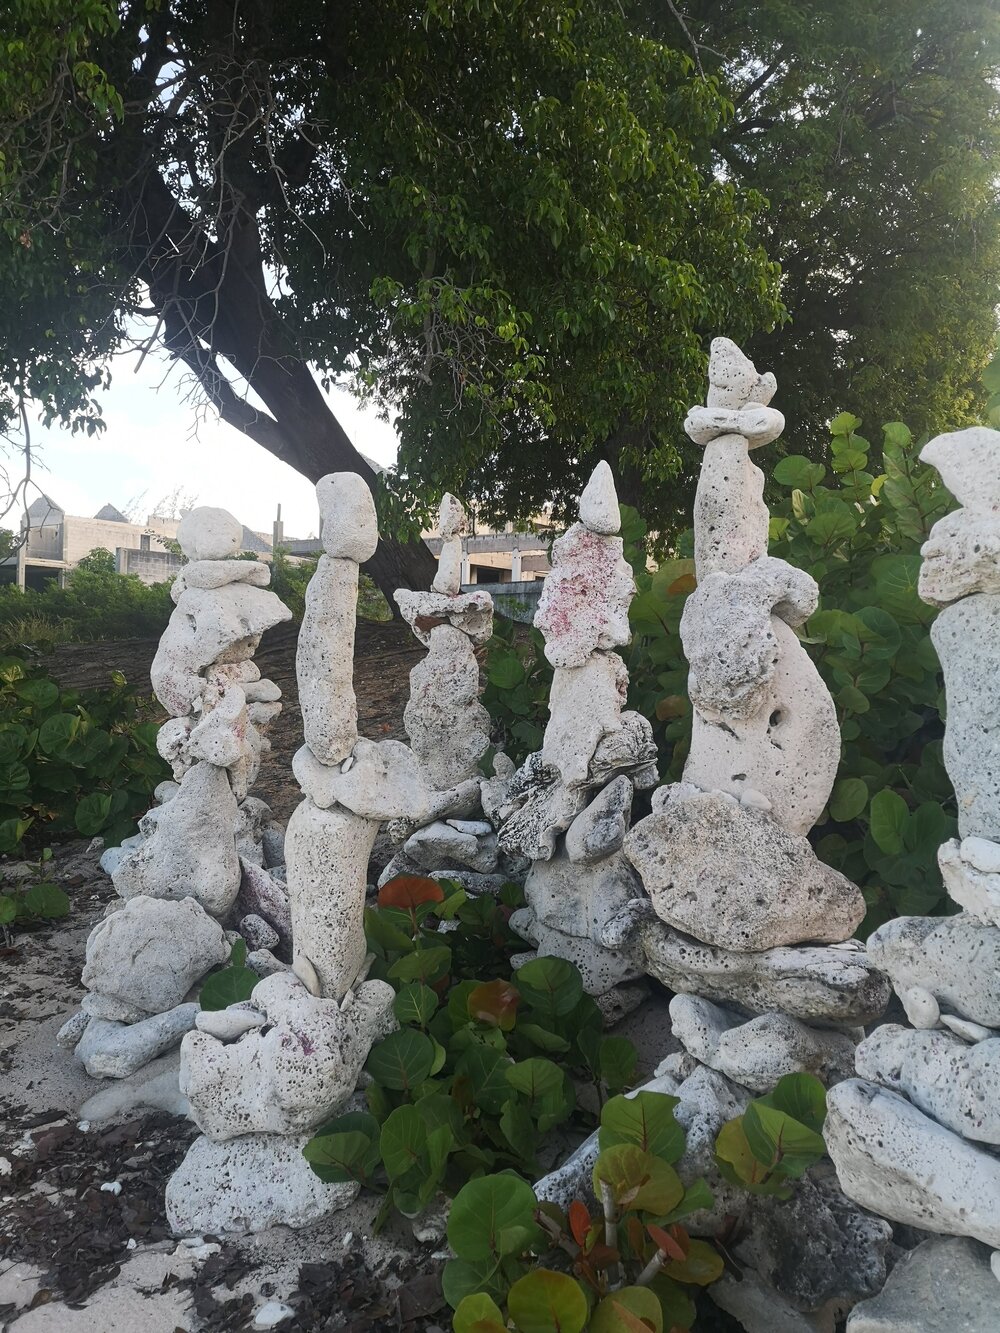 Beach sculptures